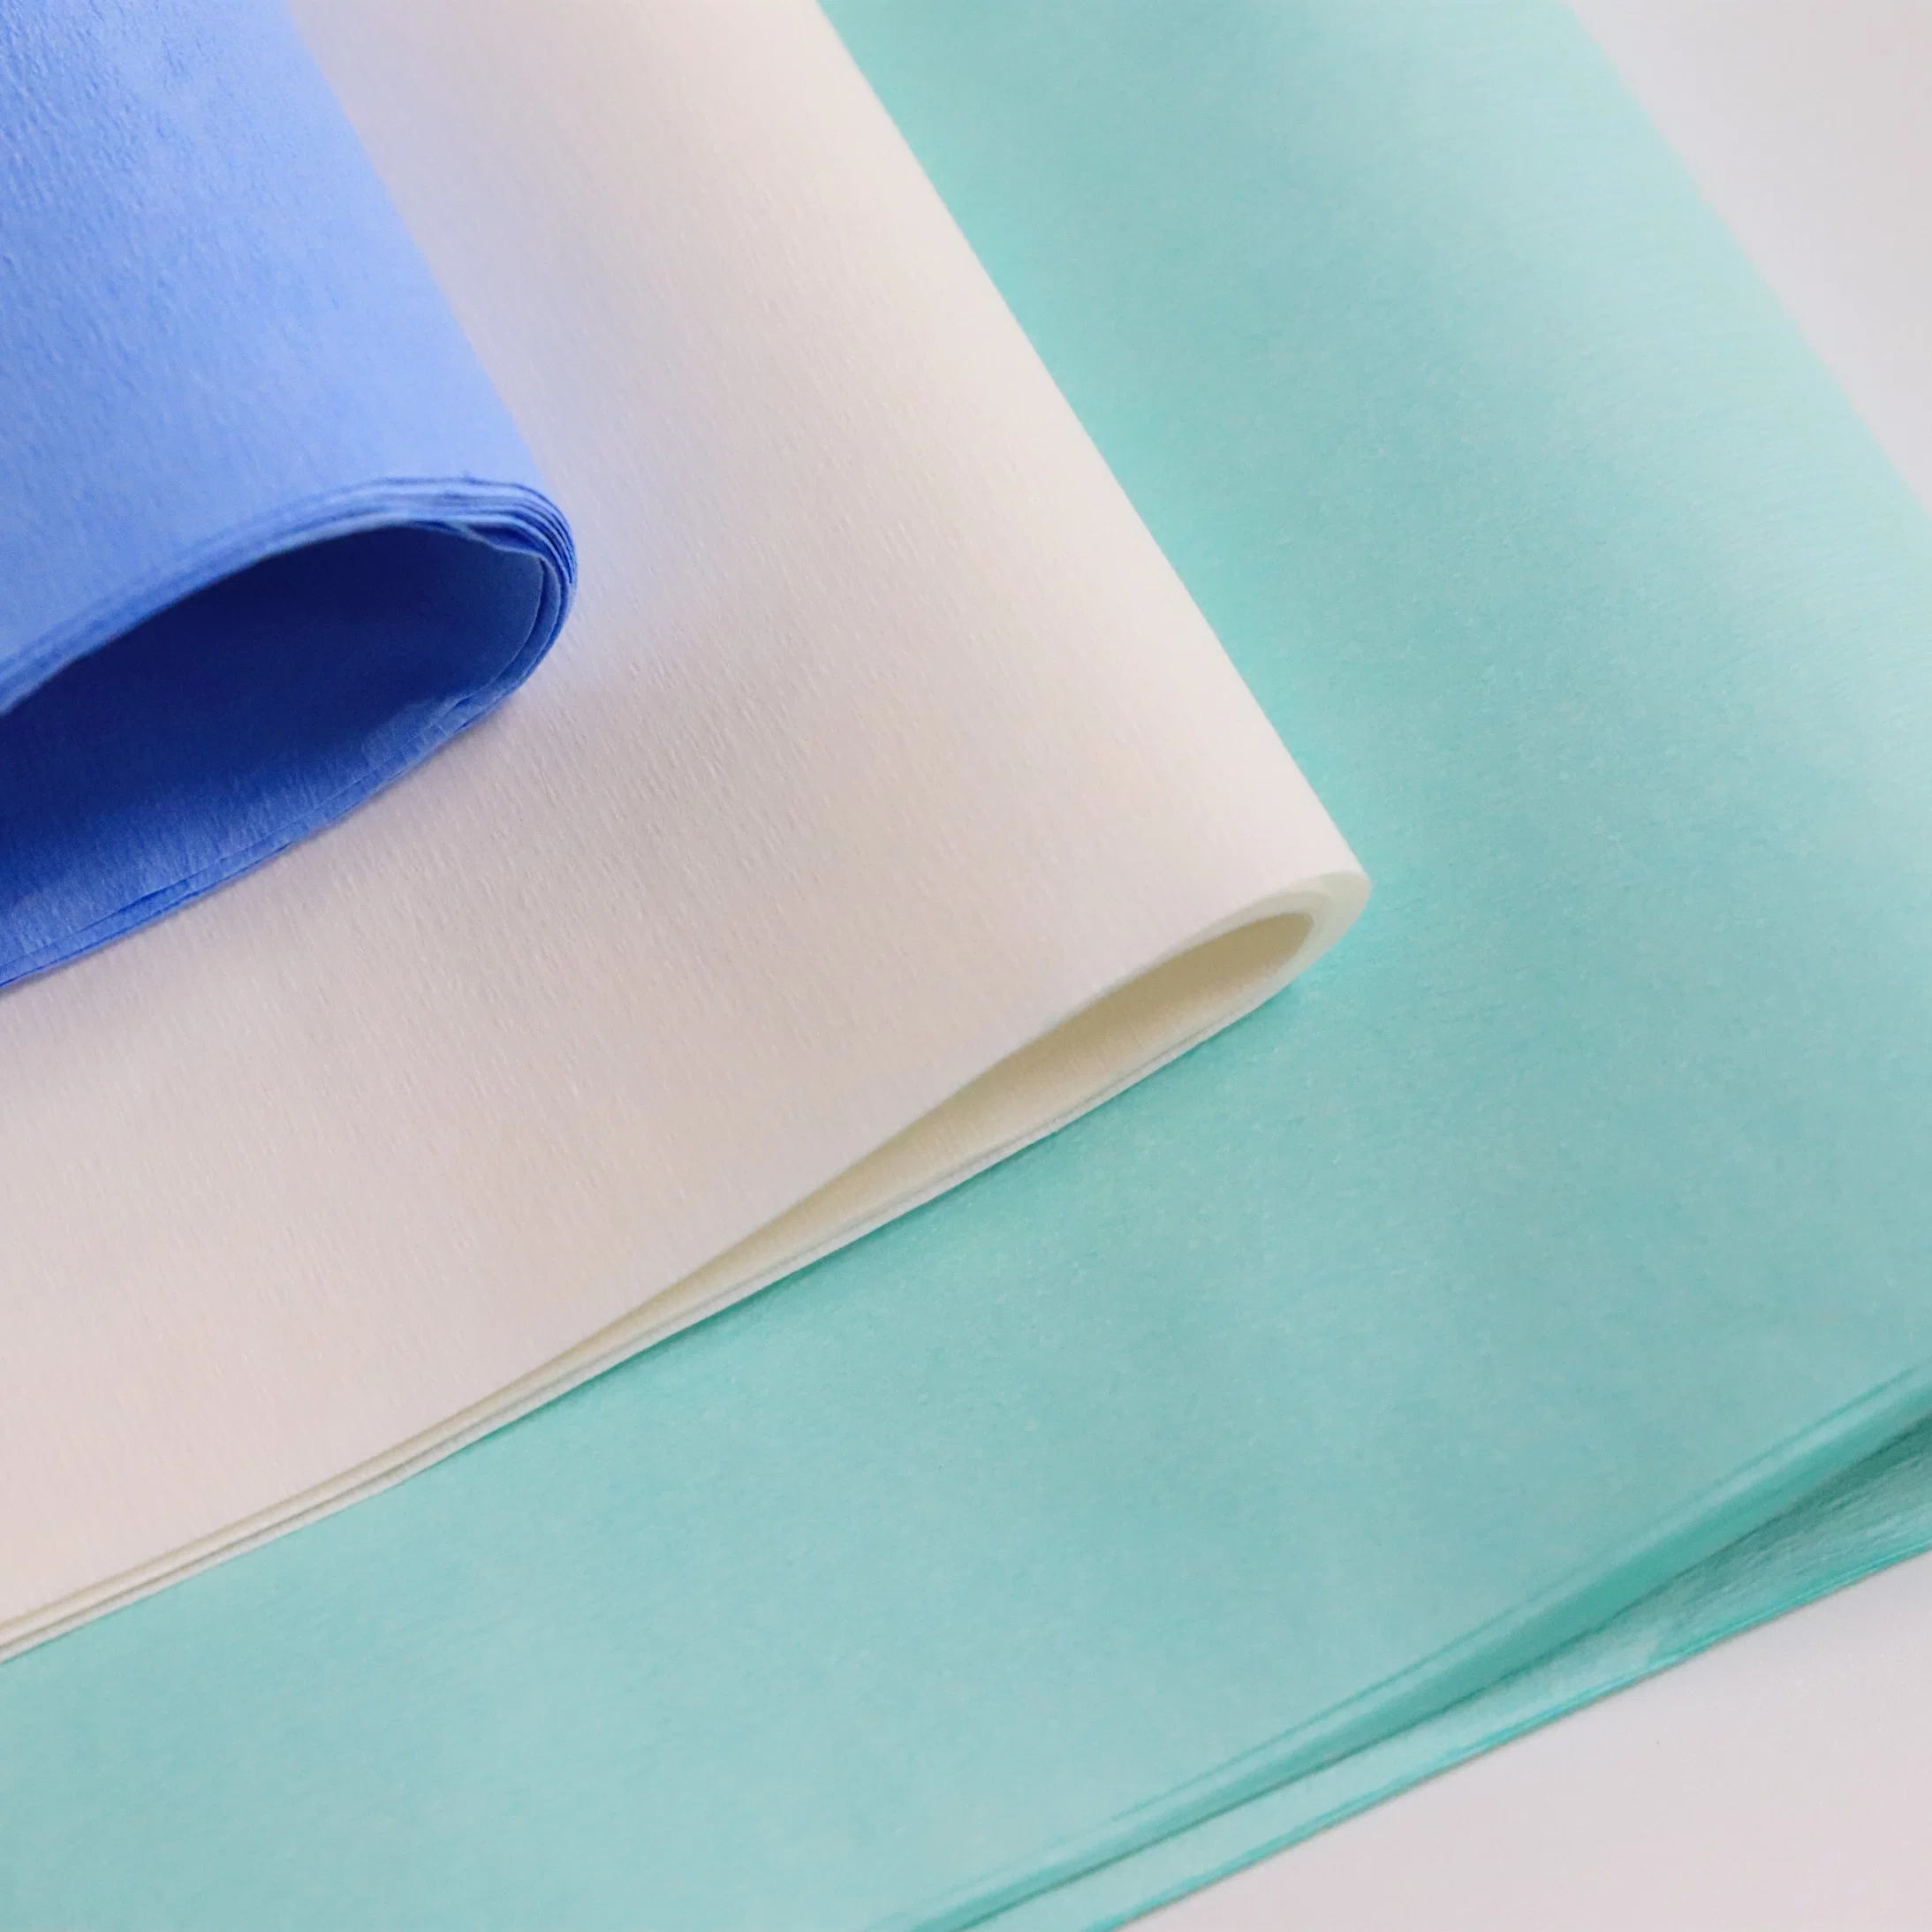 Las hojas de papel crepé Medical la esterilización quirúrgica del papel de embalaje de papel crepé médicos